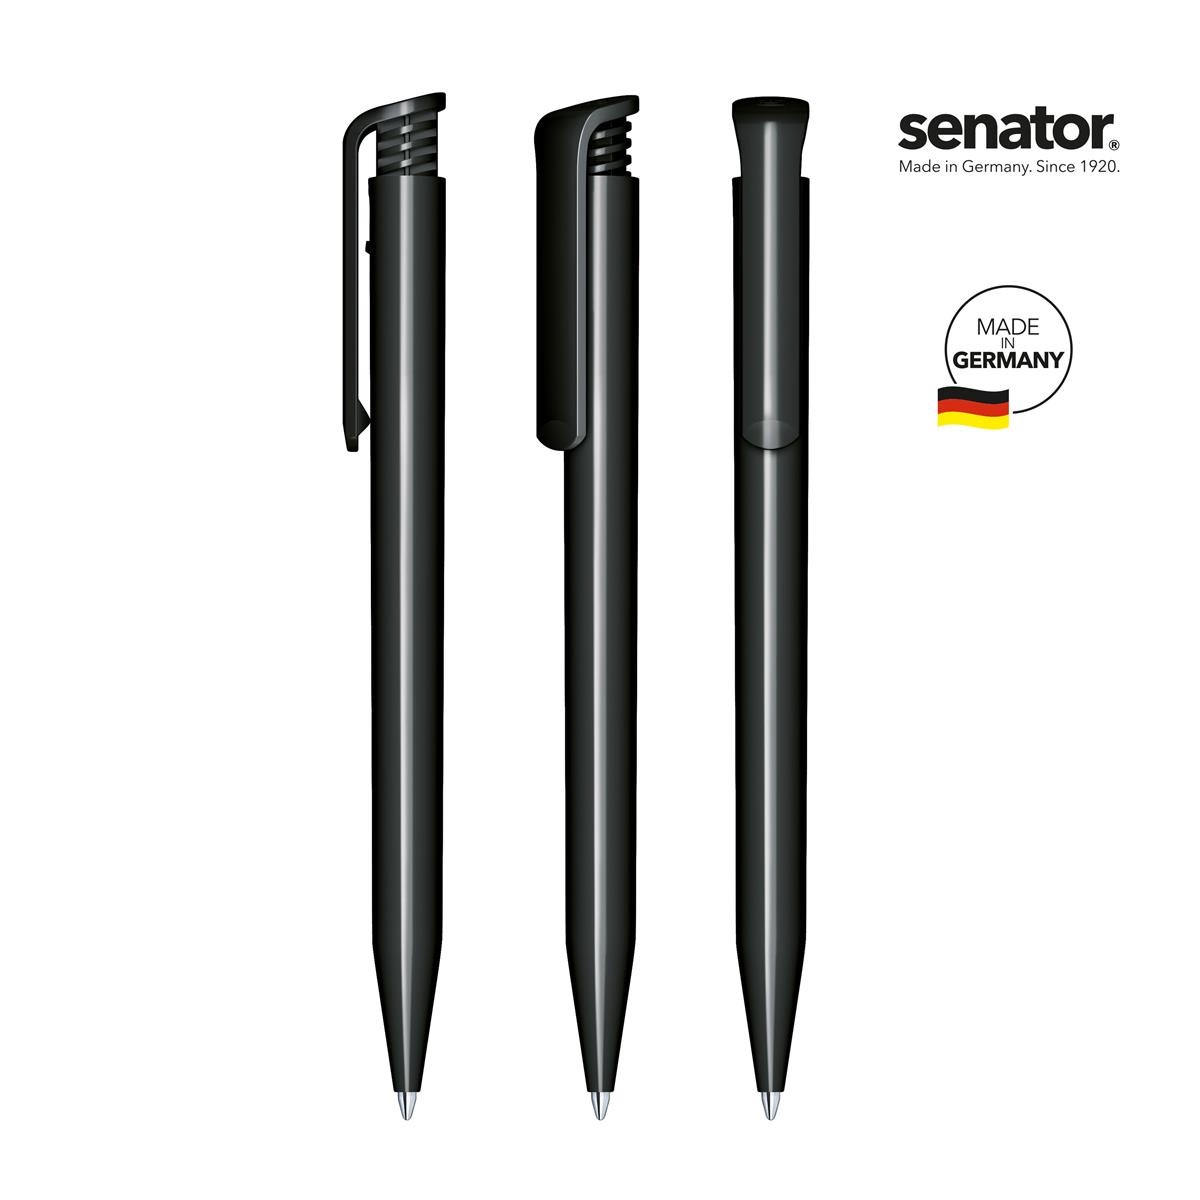 2883-senator-super-hit-polished-black-5-p